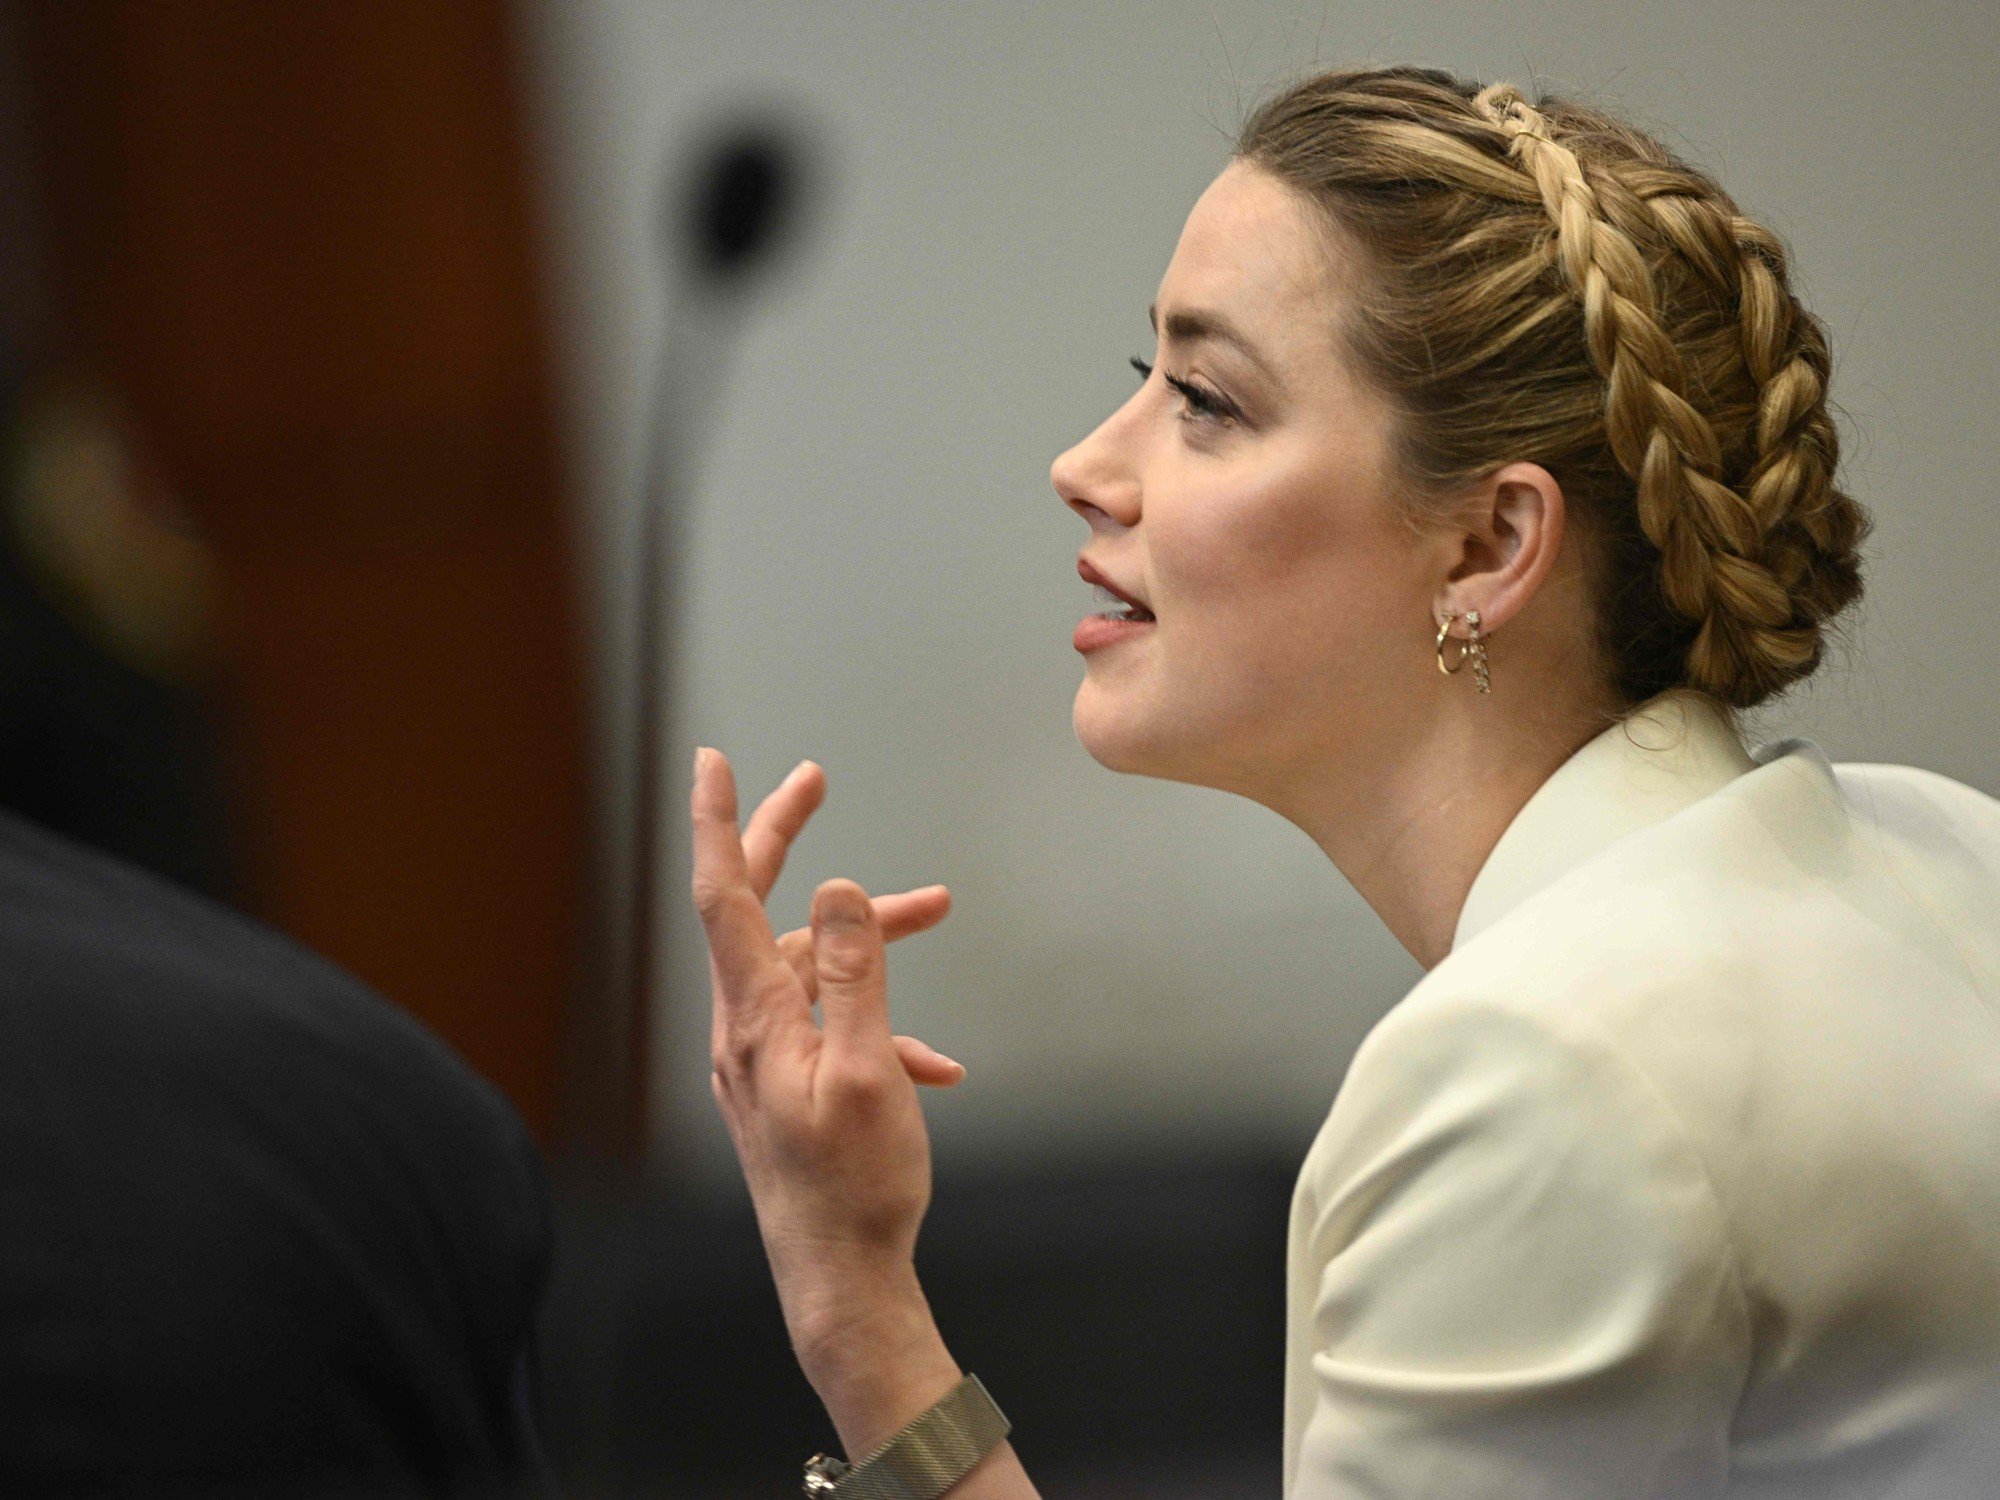 La ex empleada de Amber Heard la acusa de robarle su historia de abuso sexual contra Johnny Deep